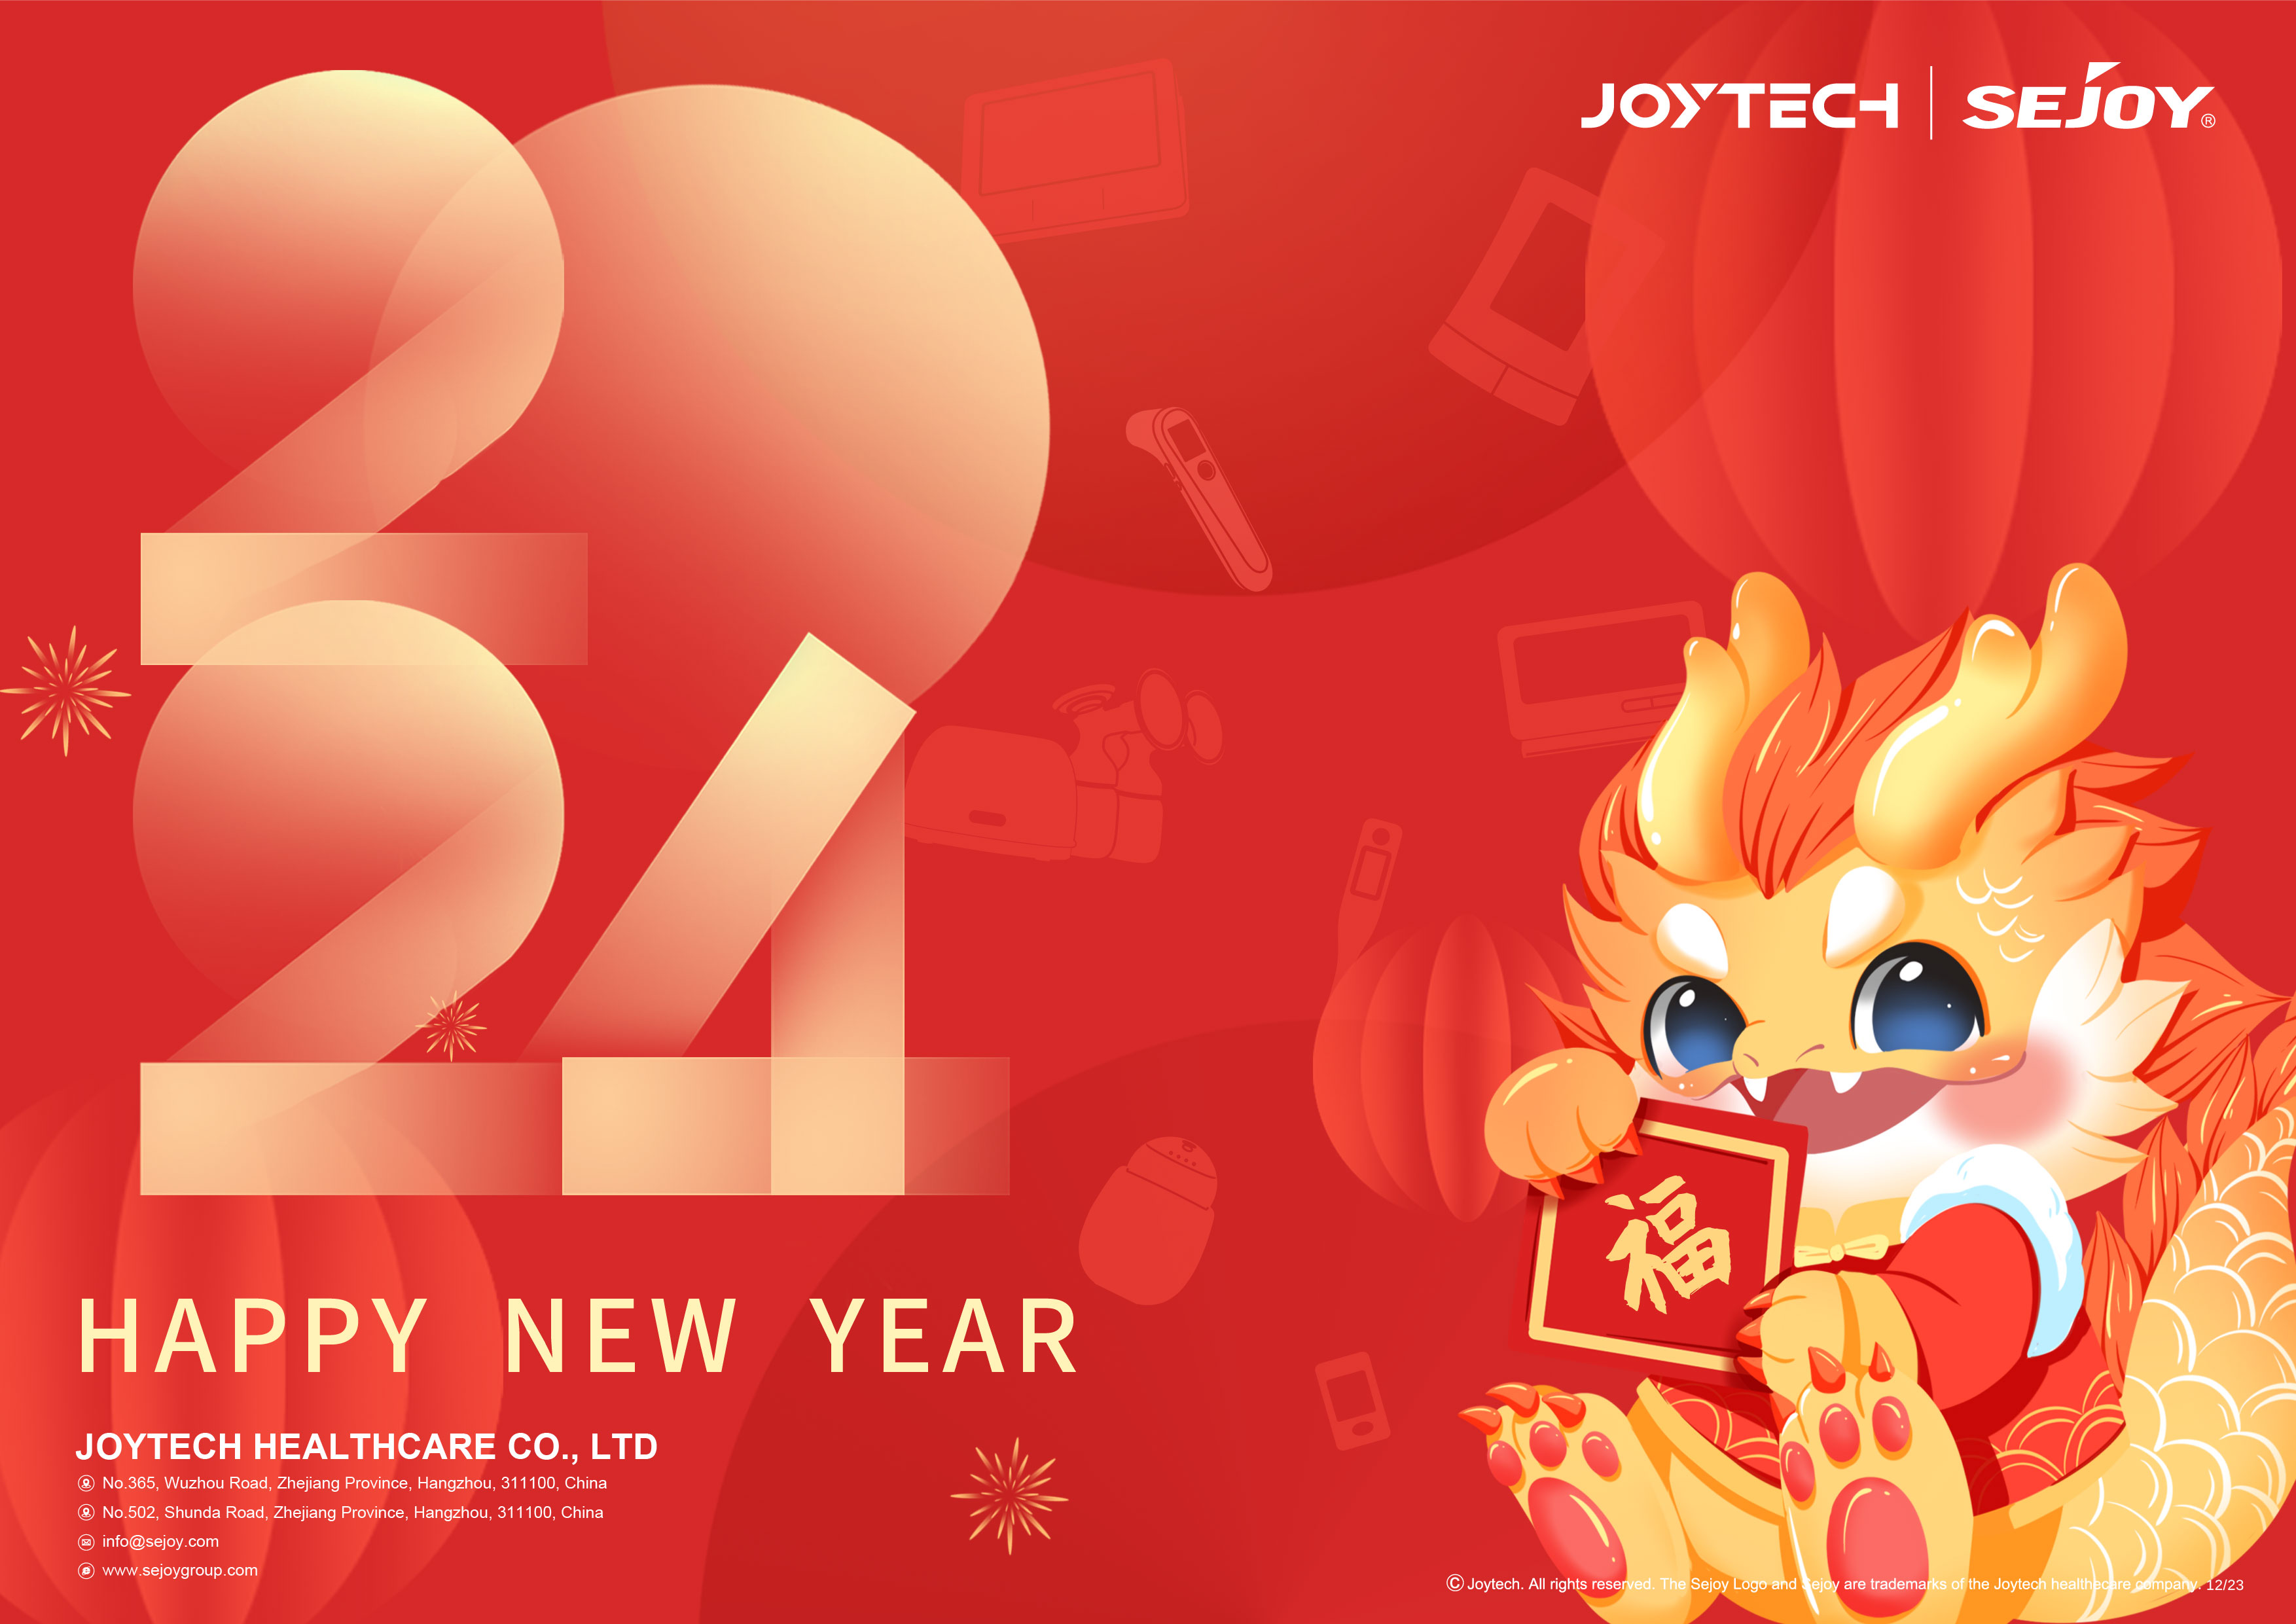 Joytech хаврын баярын мэдэгдэл-Луу жилийн мэнд, өдөр бүр аз жаргалтай!